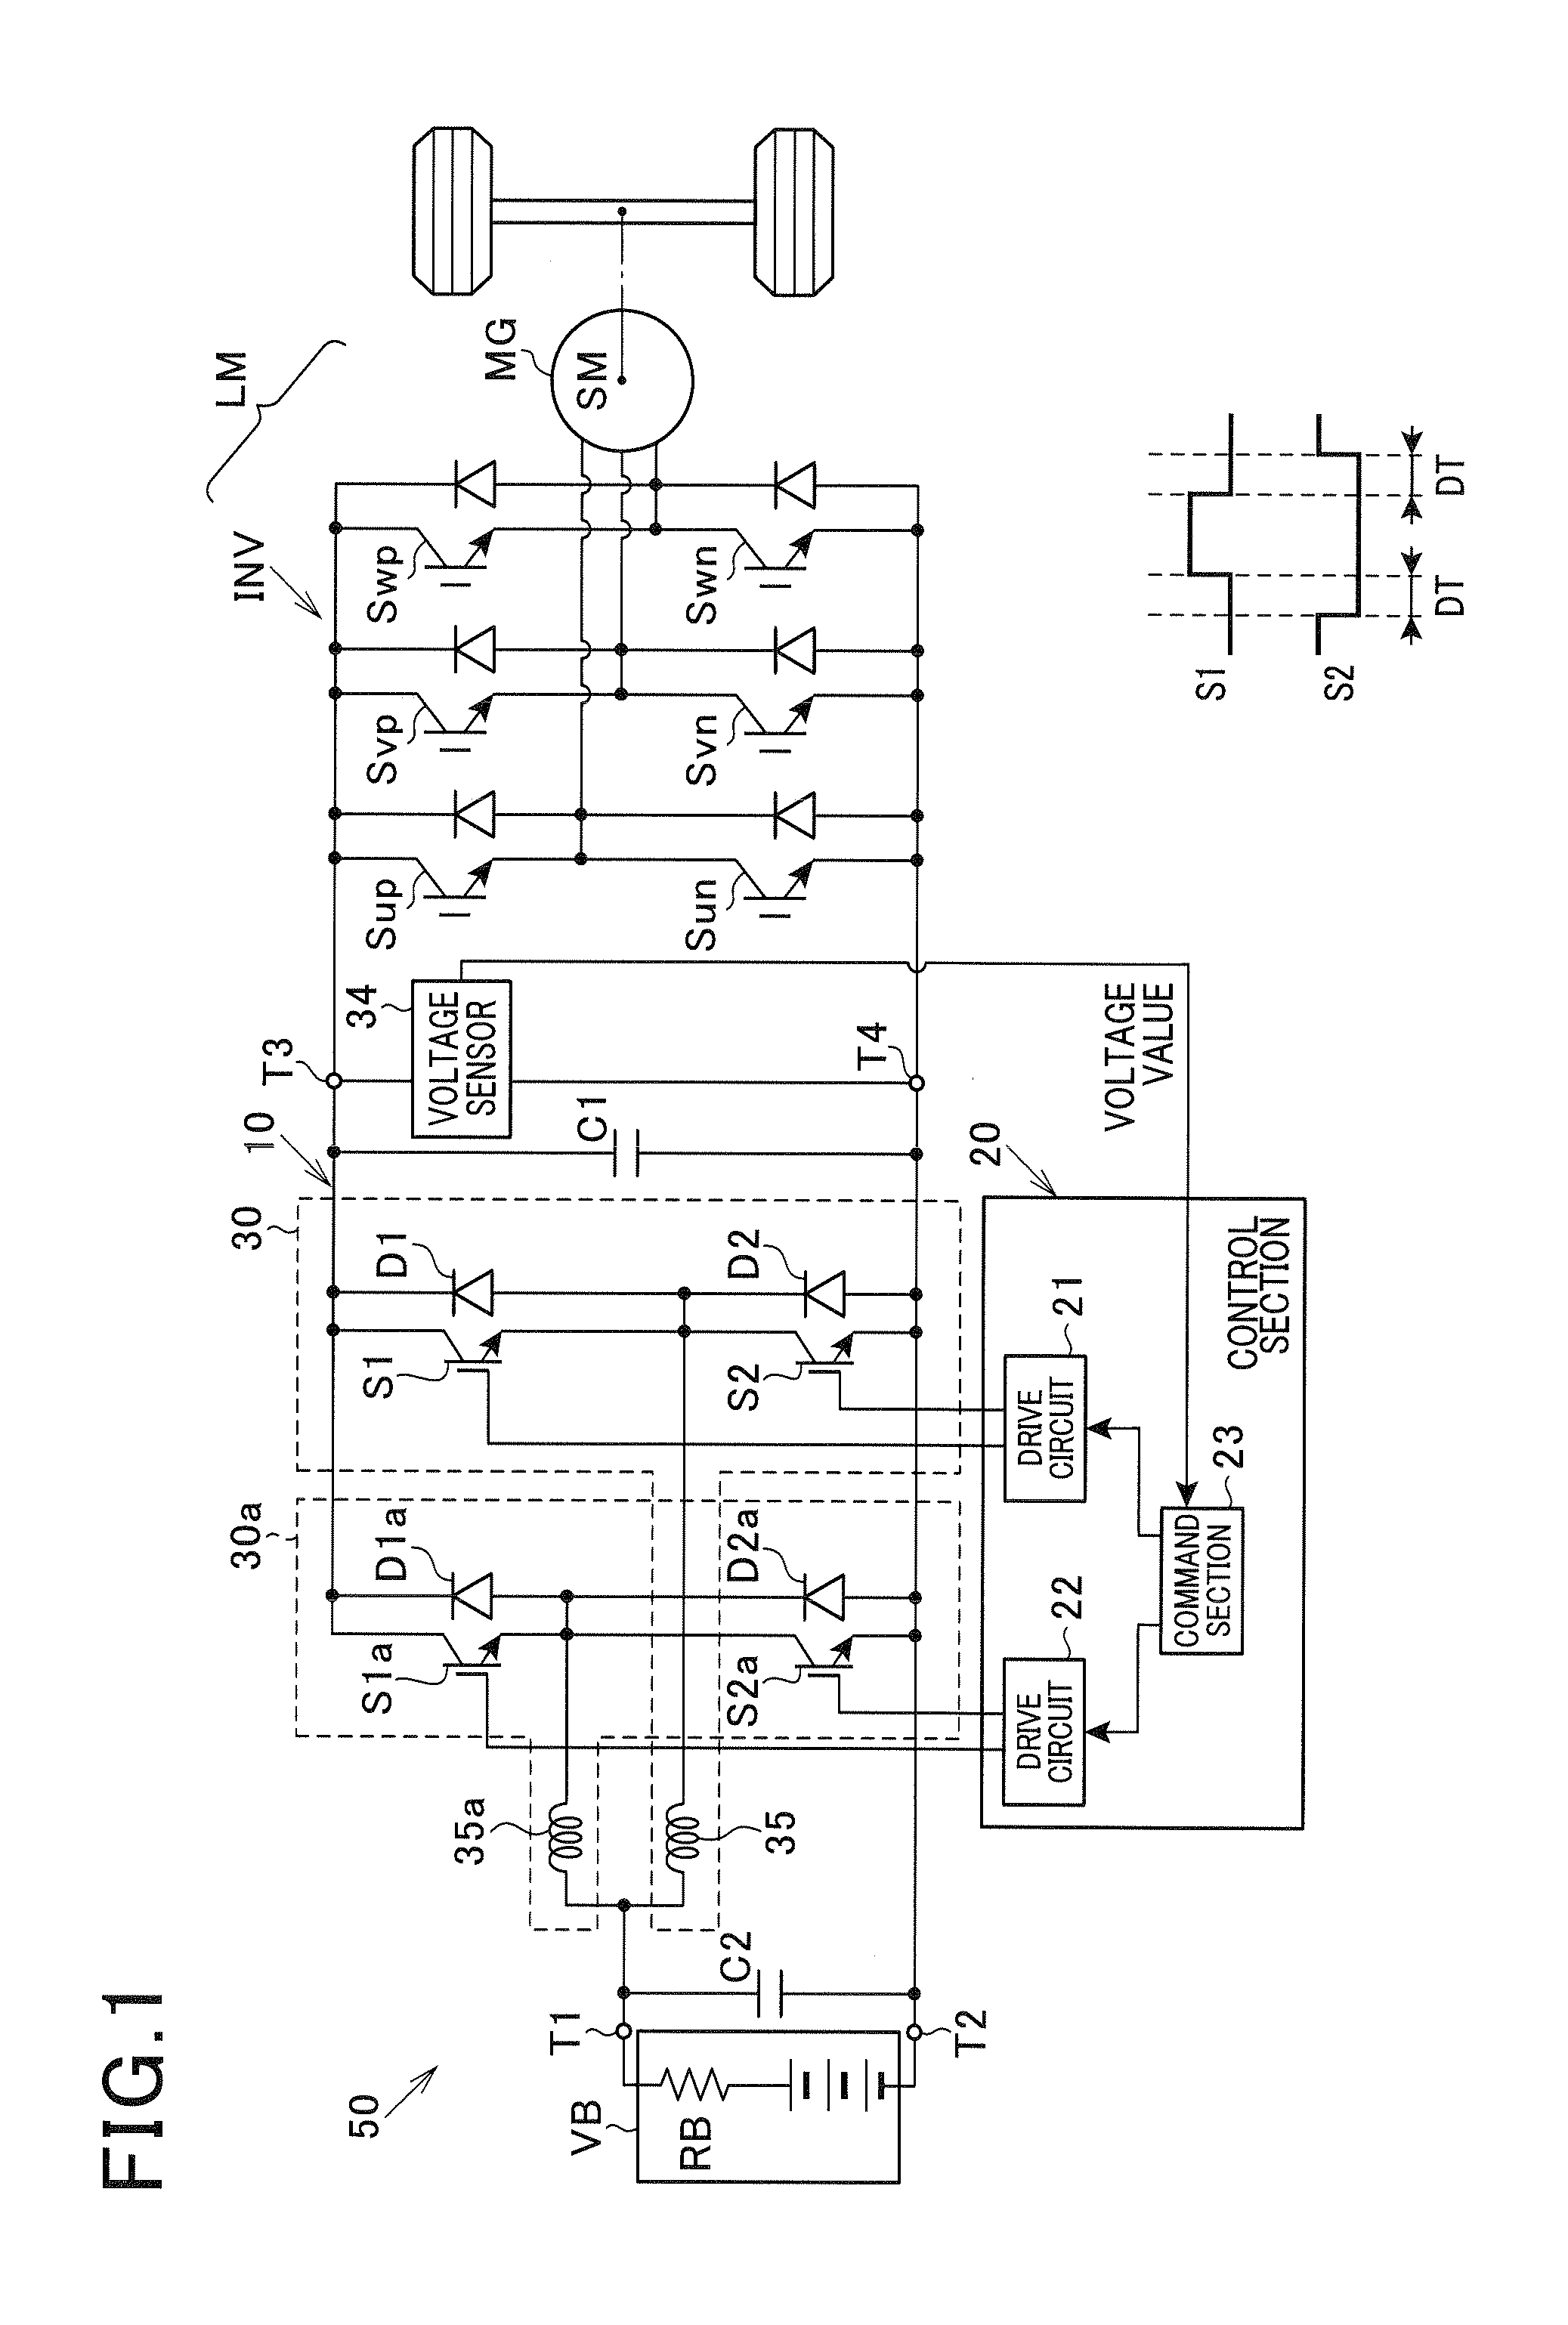 Voltage converter and voltage converter system including voltage converter